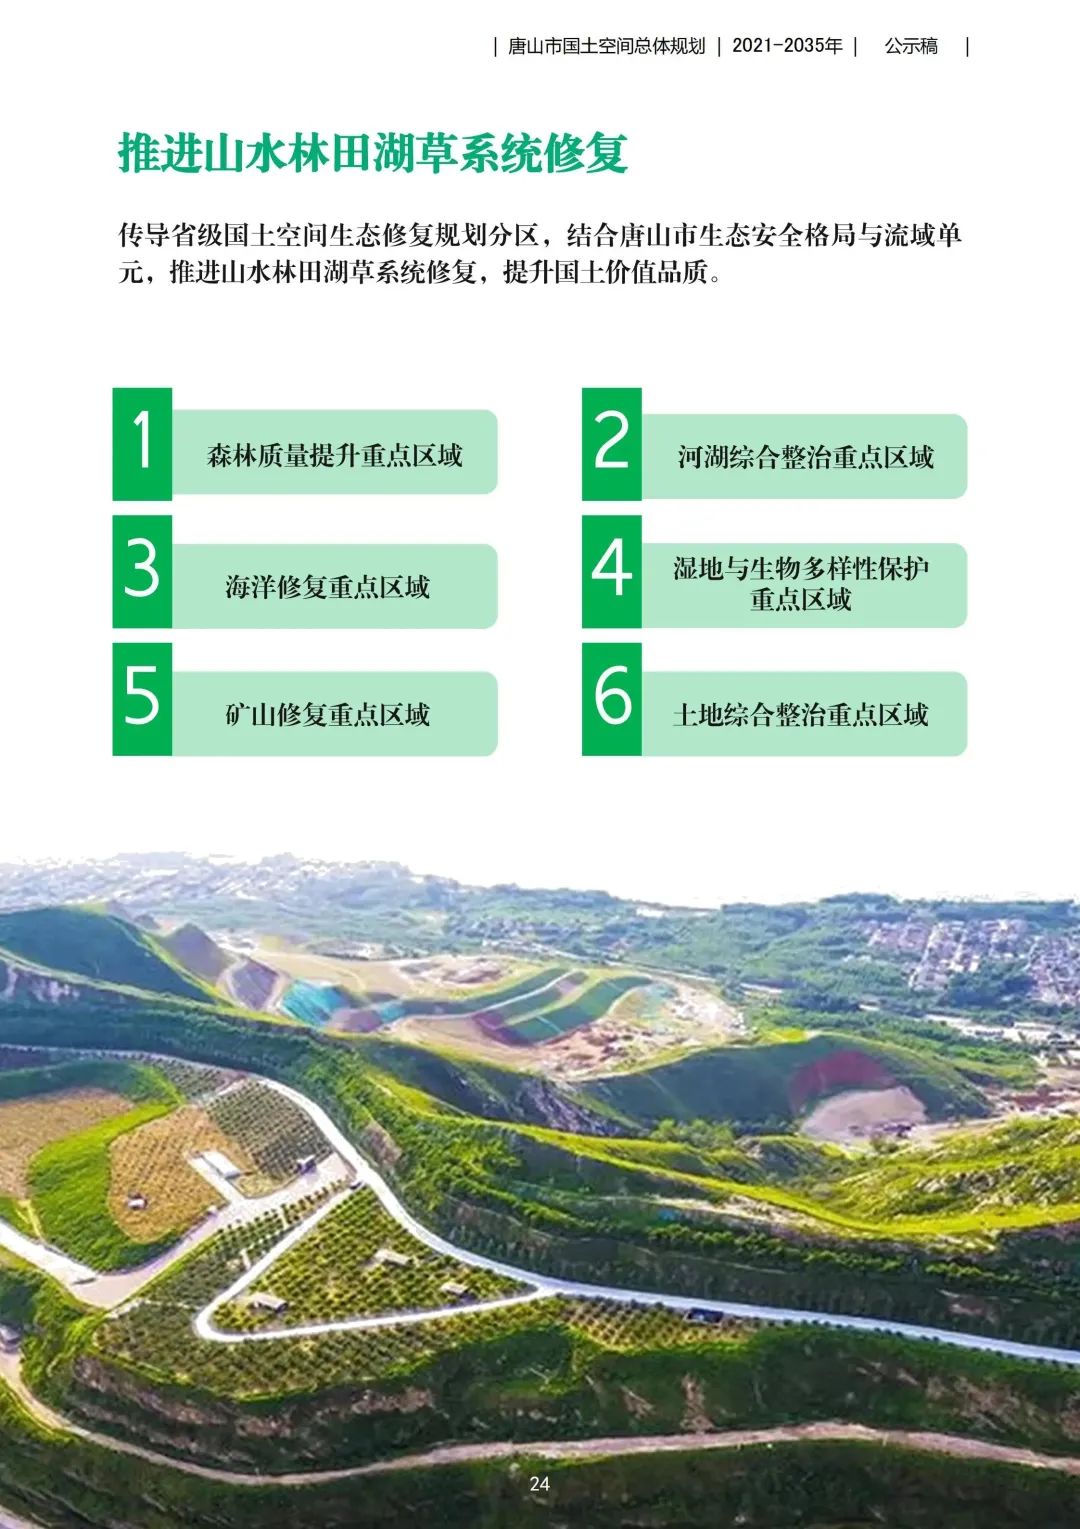 来源：唐山市自然资源和规划局